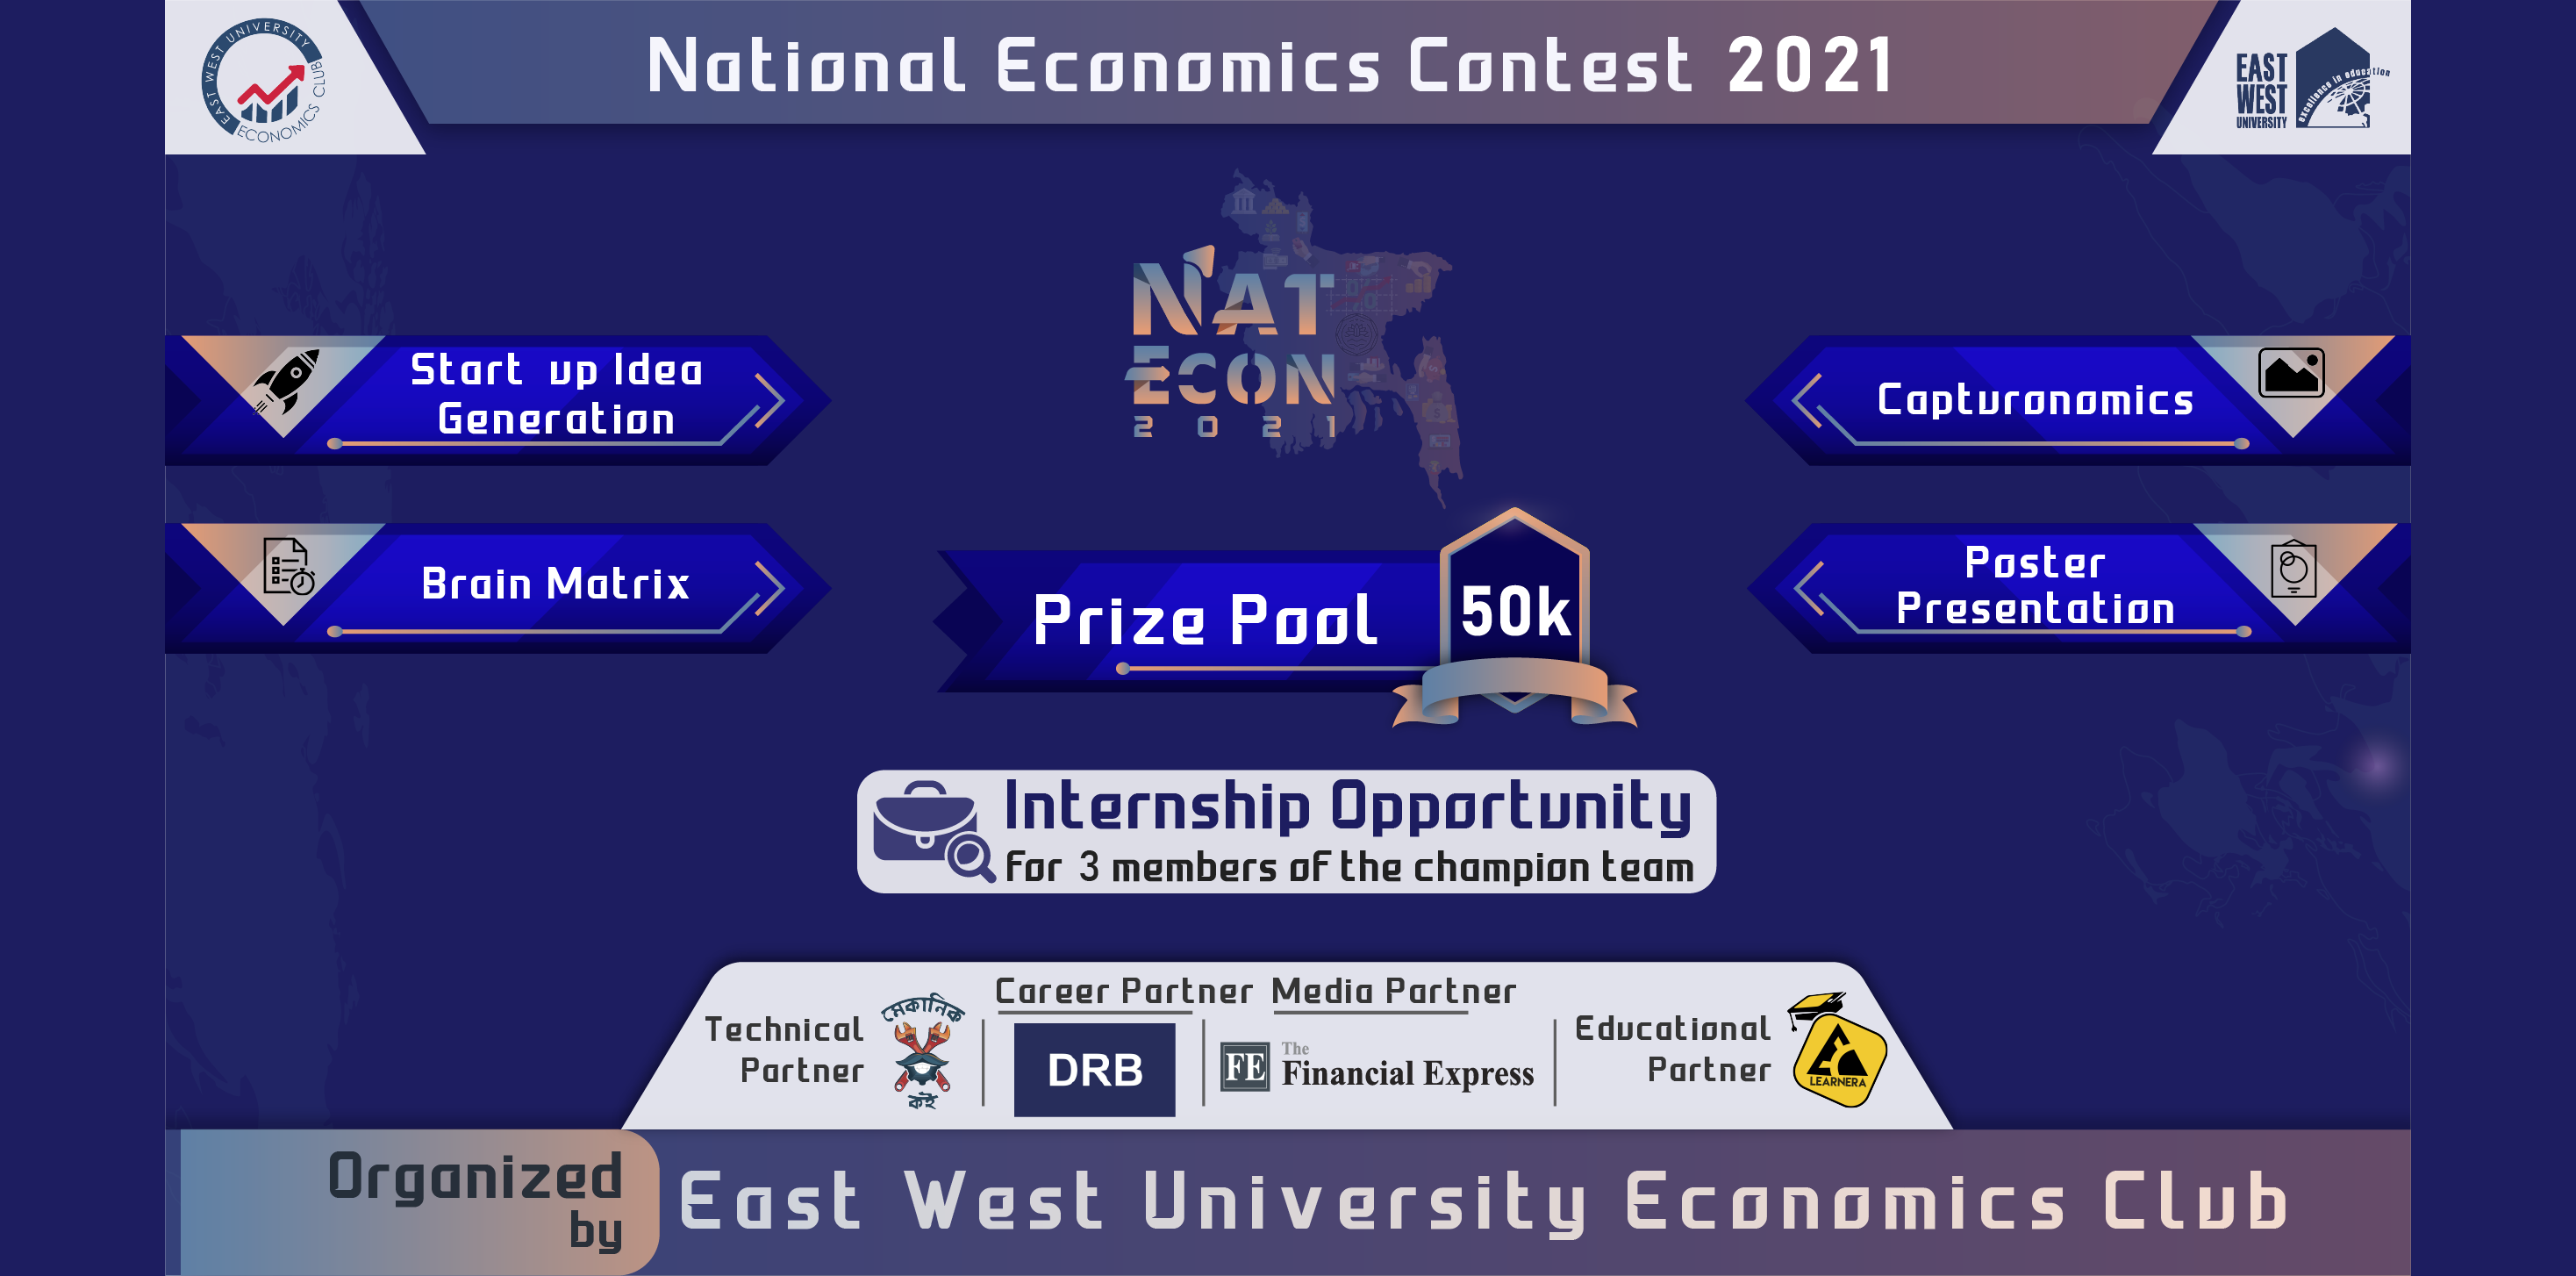 NatEcon 2021: National Economics Contest 2021 